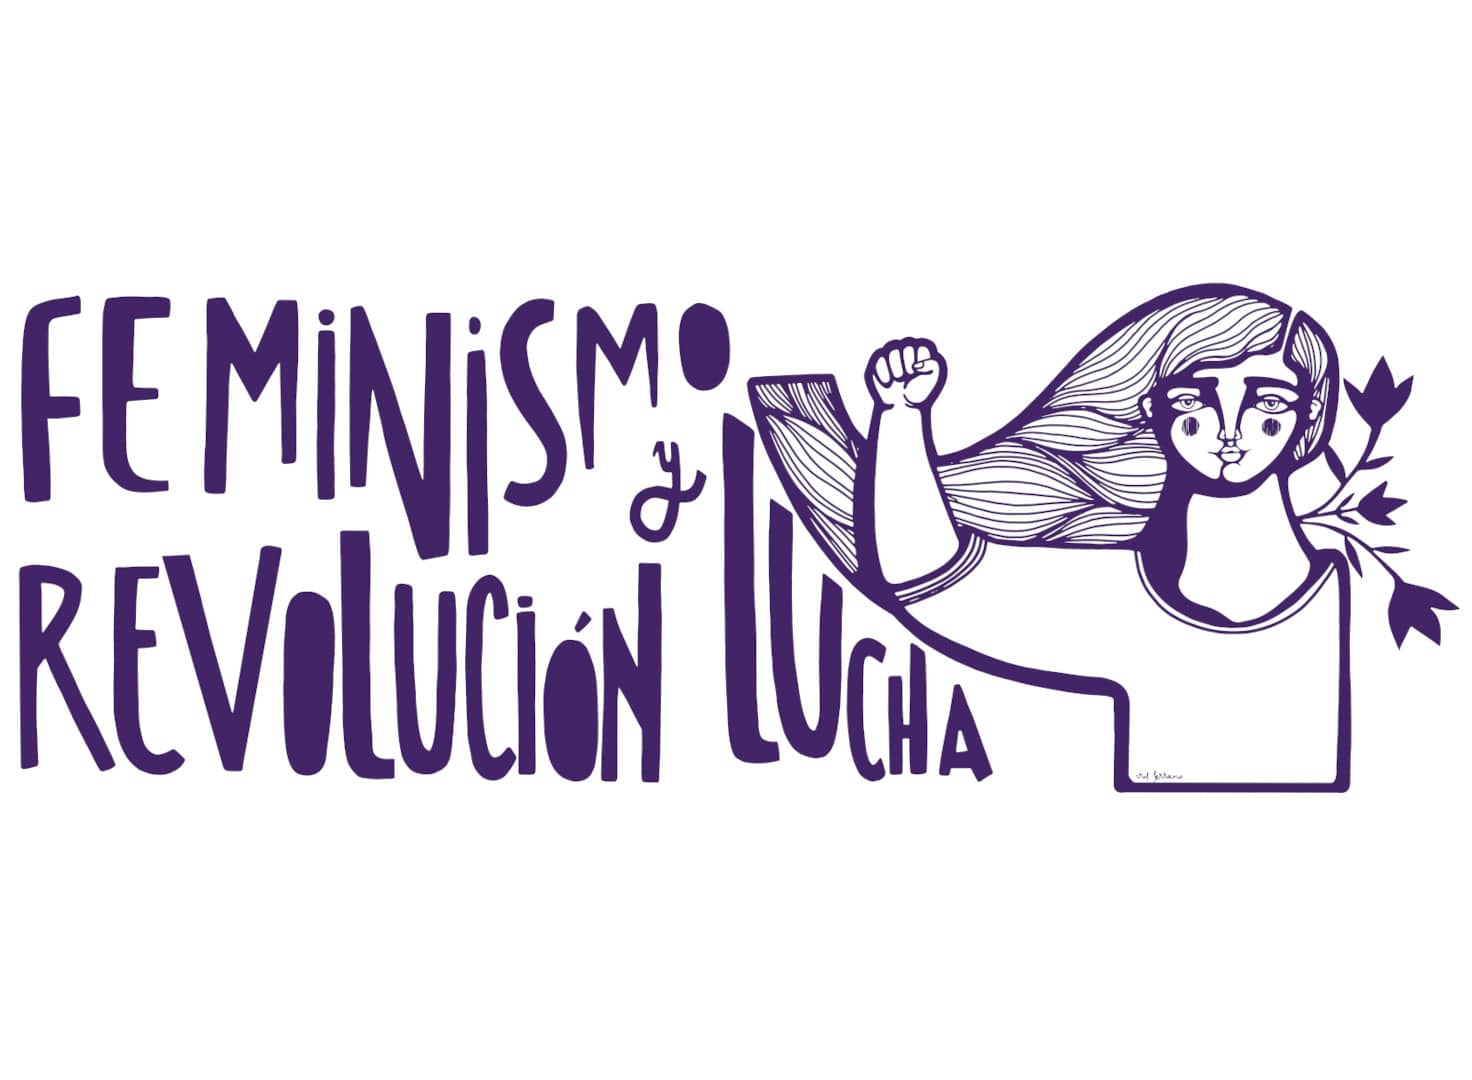 Feminismo, lucha, revolución